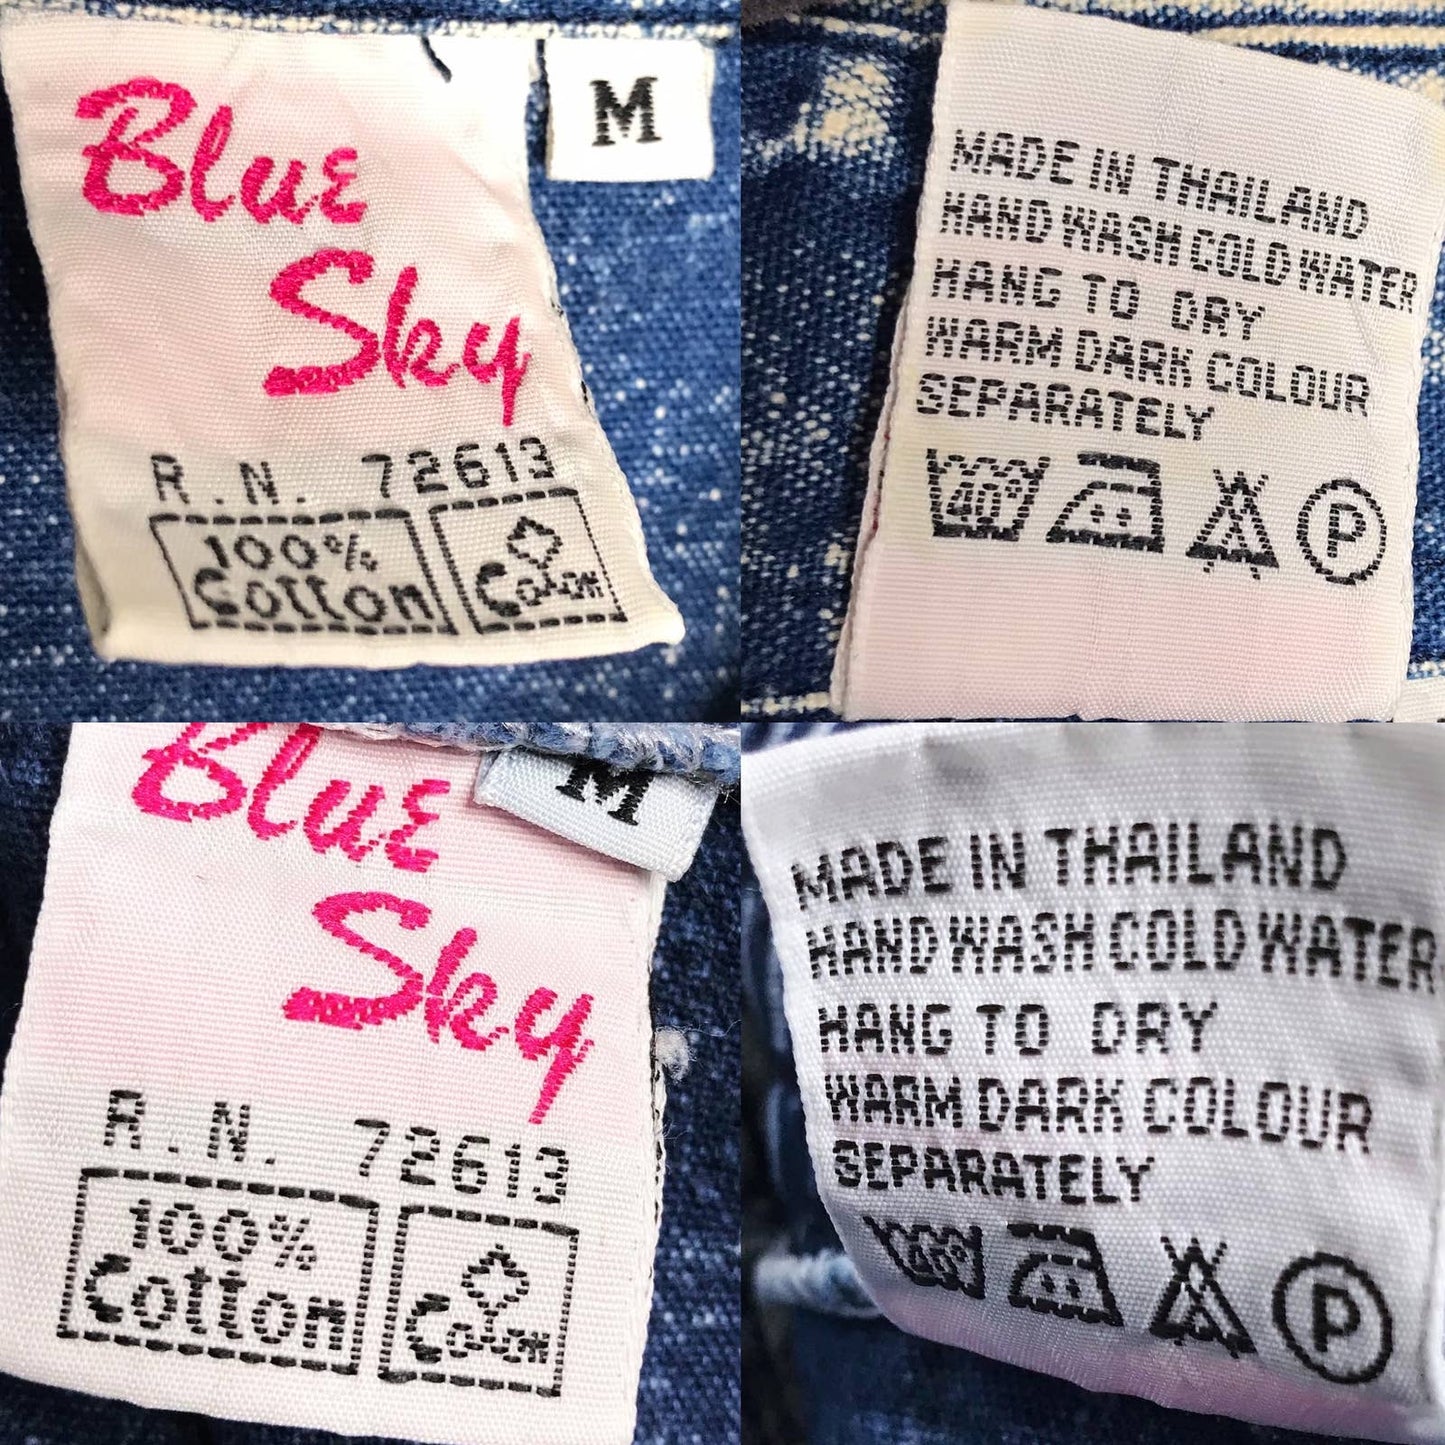 Vintage 80s Acid Wash Denim Skirt Set Studded Embroidered Blue Sky Size M